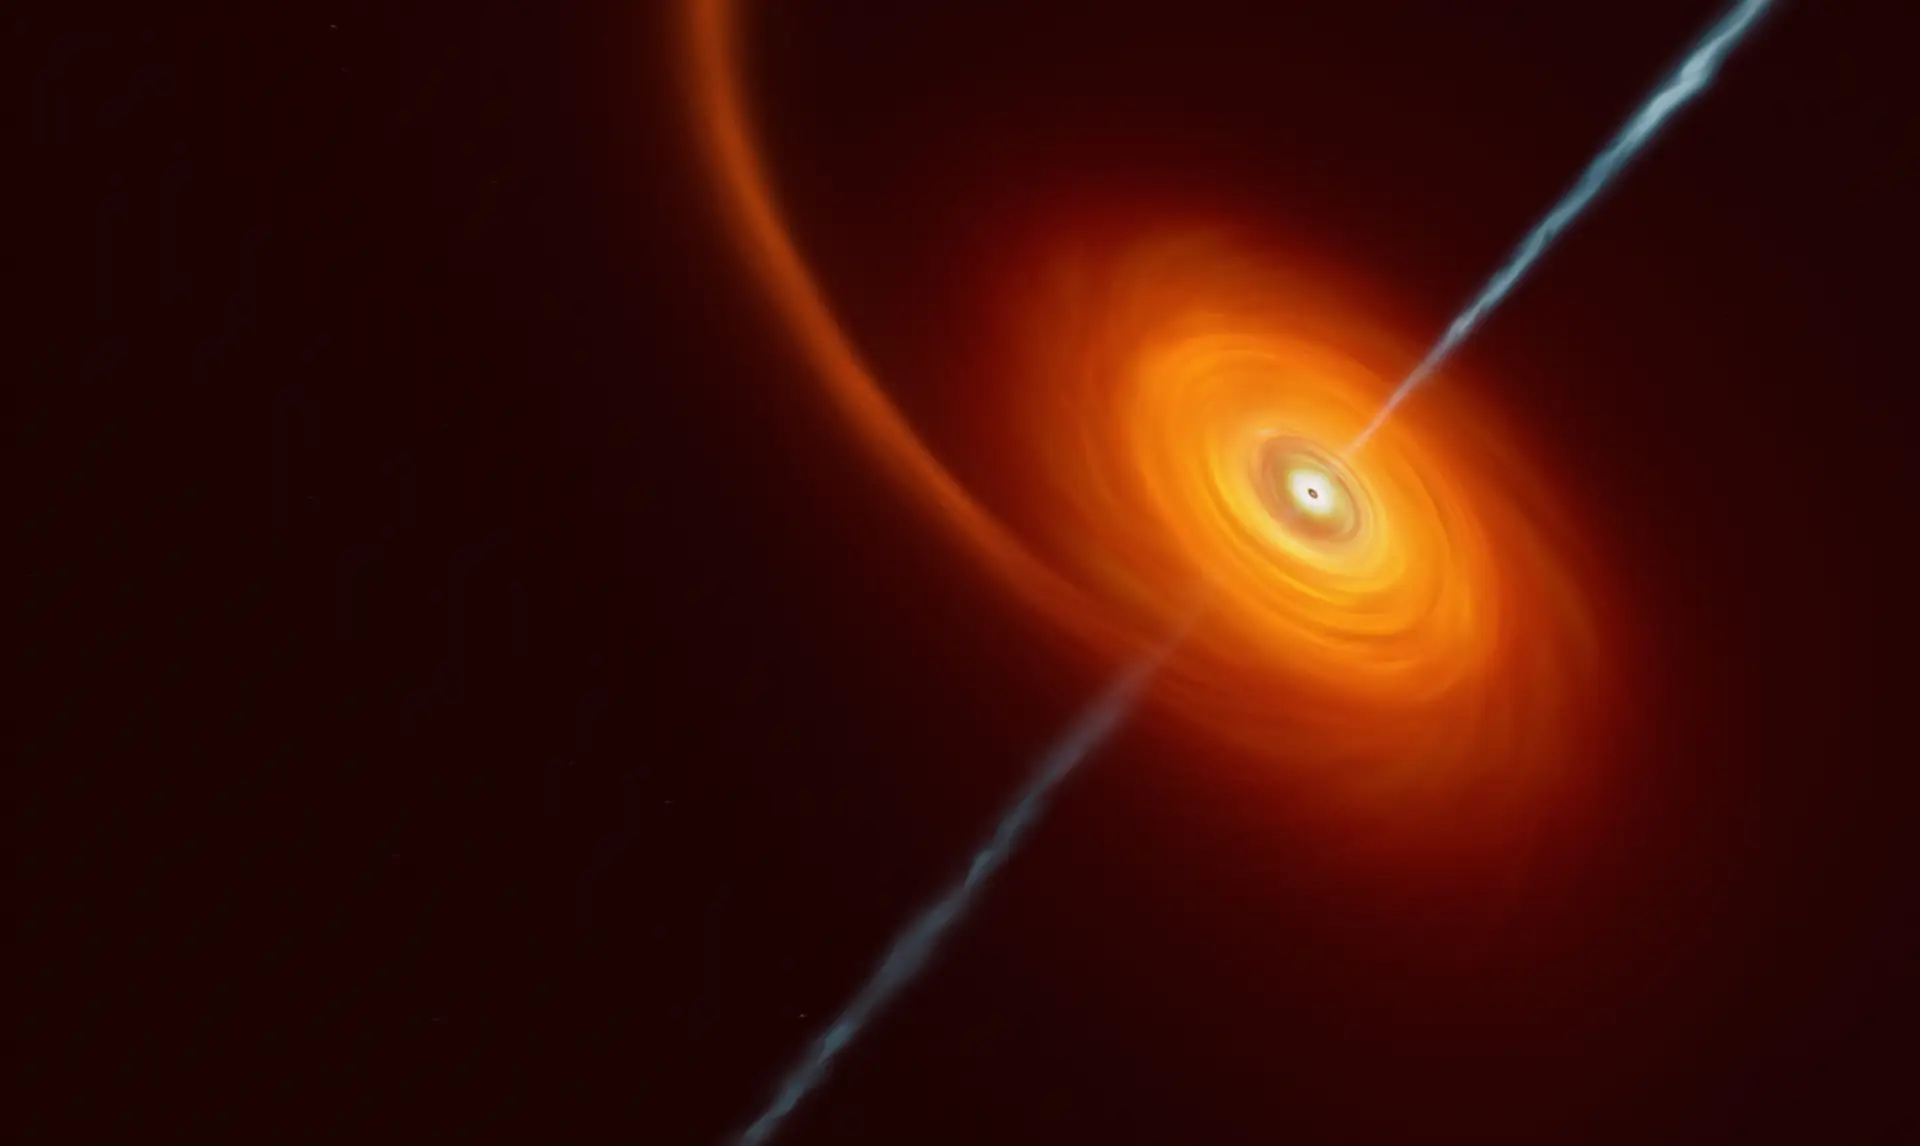 Esta imagem artística ilustra como é que uma estrela que se aproxima demasiado de um buraco negro fica "espremida" pela enorme atração gravitacional deste objeto. Algum do material estelar é puxado e roda em torno do buraco negro, formando o disco que podemos ver nesta imagem. Em alguns casos raros como este, jatos de matéria e radiação são lançados a partir dos pólos do buraco negro